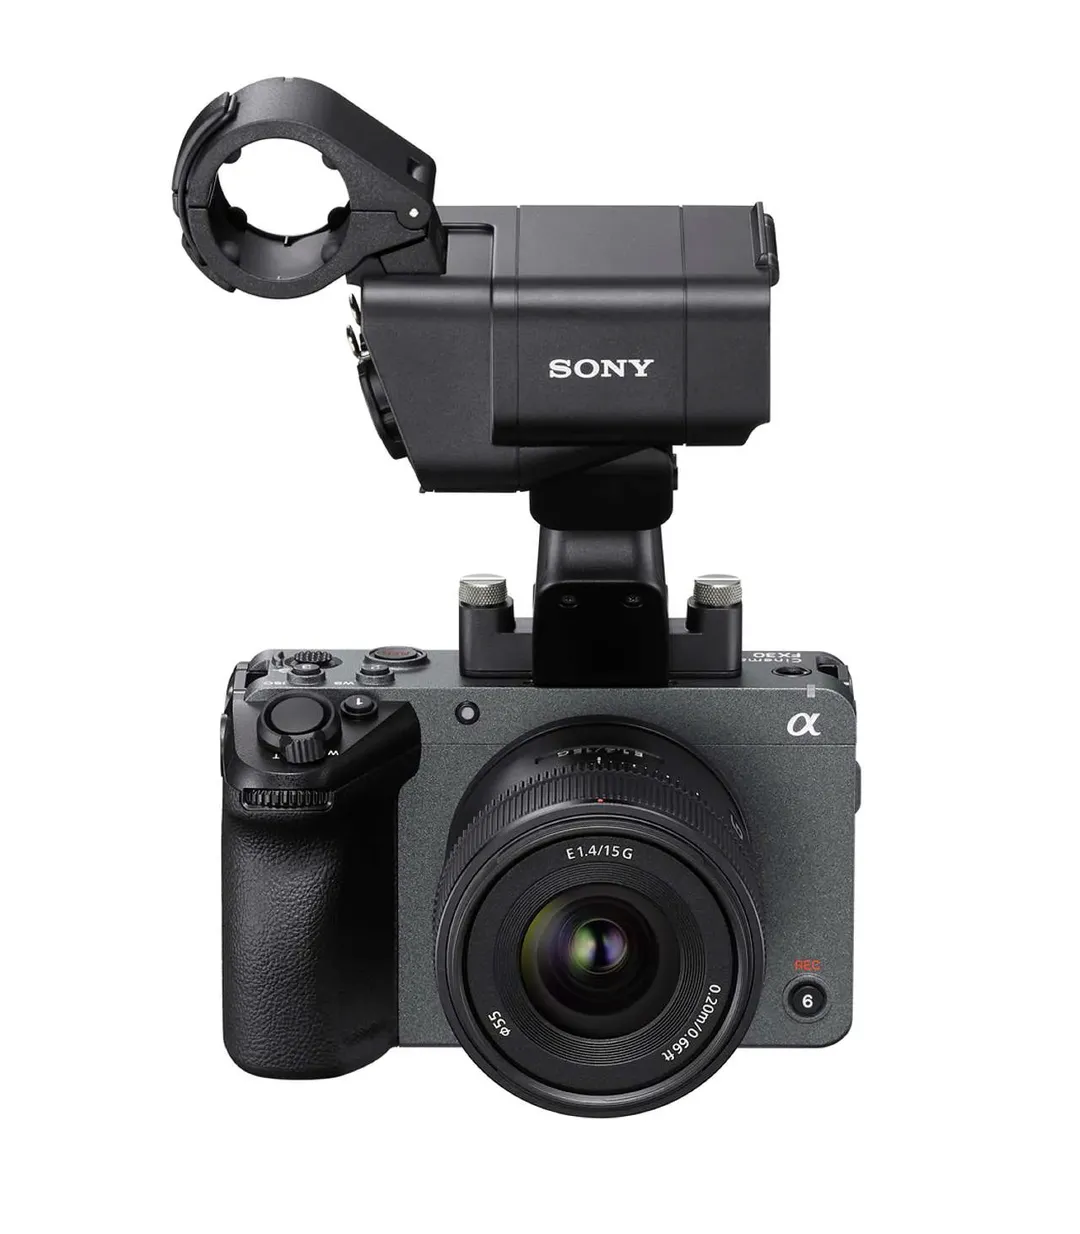 Sony mở rộng dòng Cinema Line với máy quay 4K Super 35 dành cho các nhà làm phim tương lai